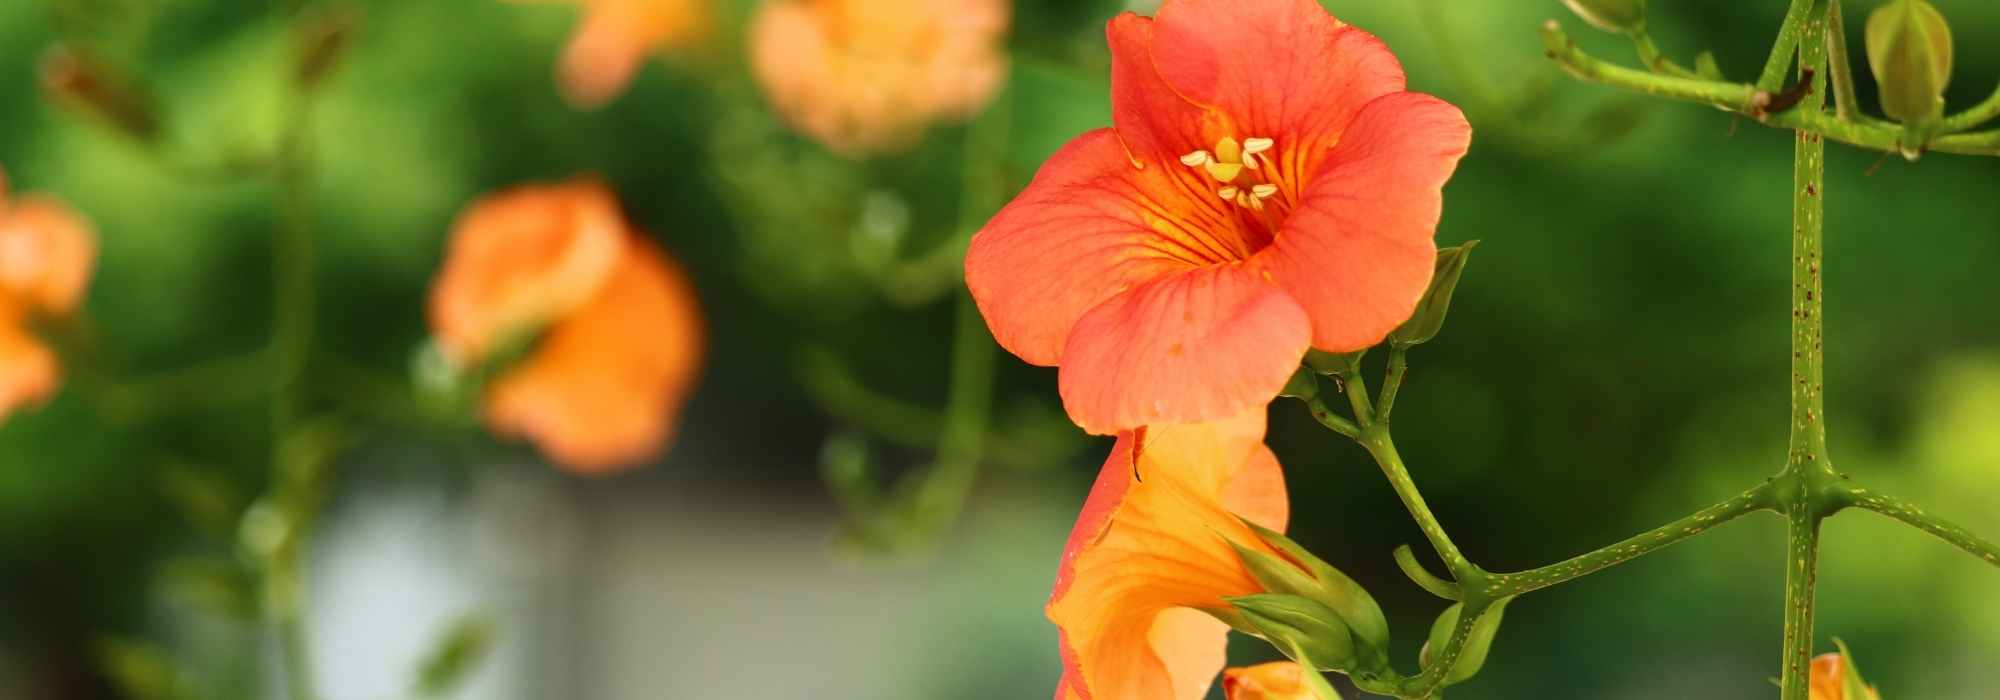 7 plantes grimpantes à fleurs orange qu'il faut avoir dans son jardin